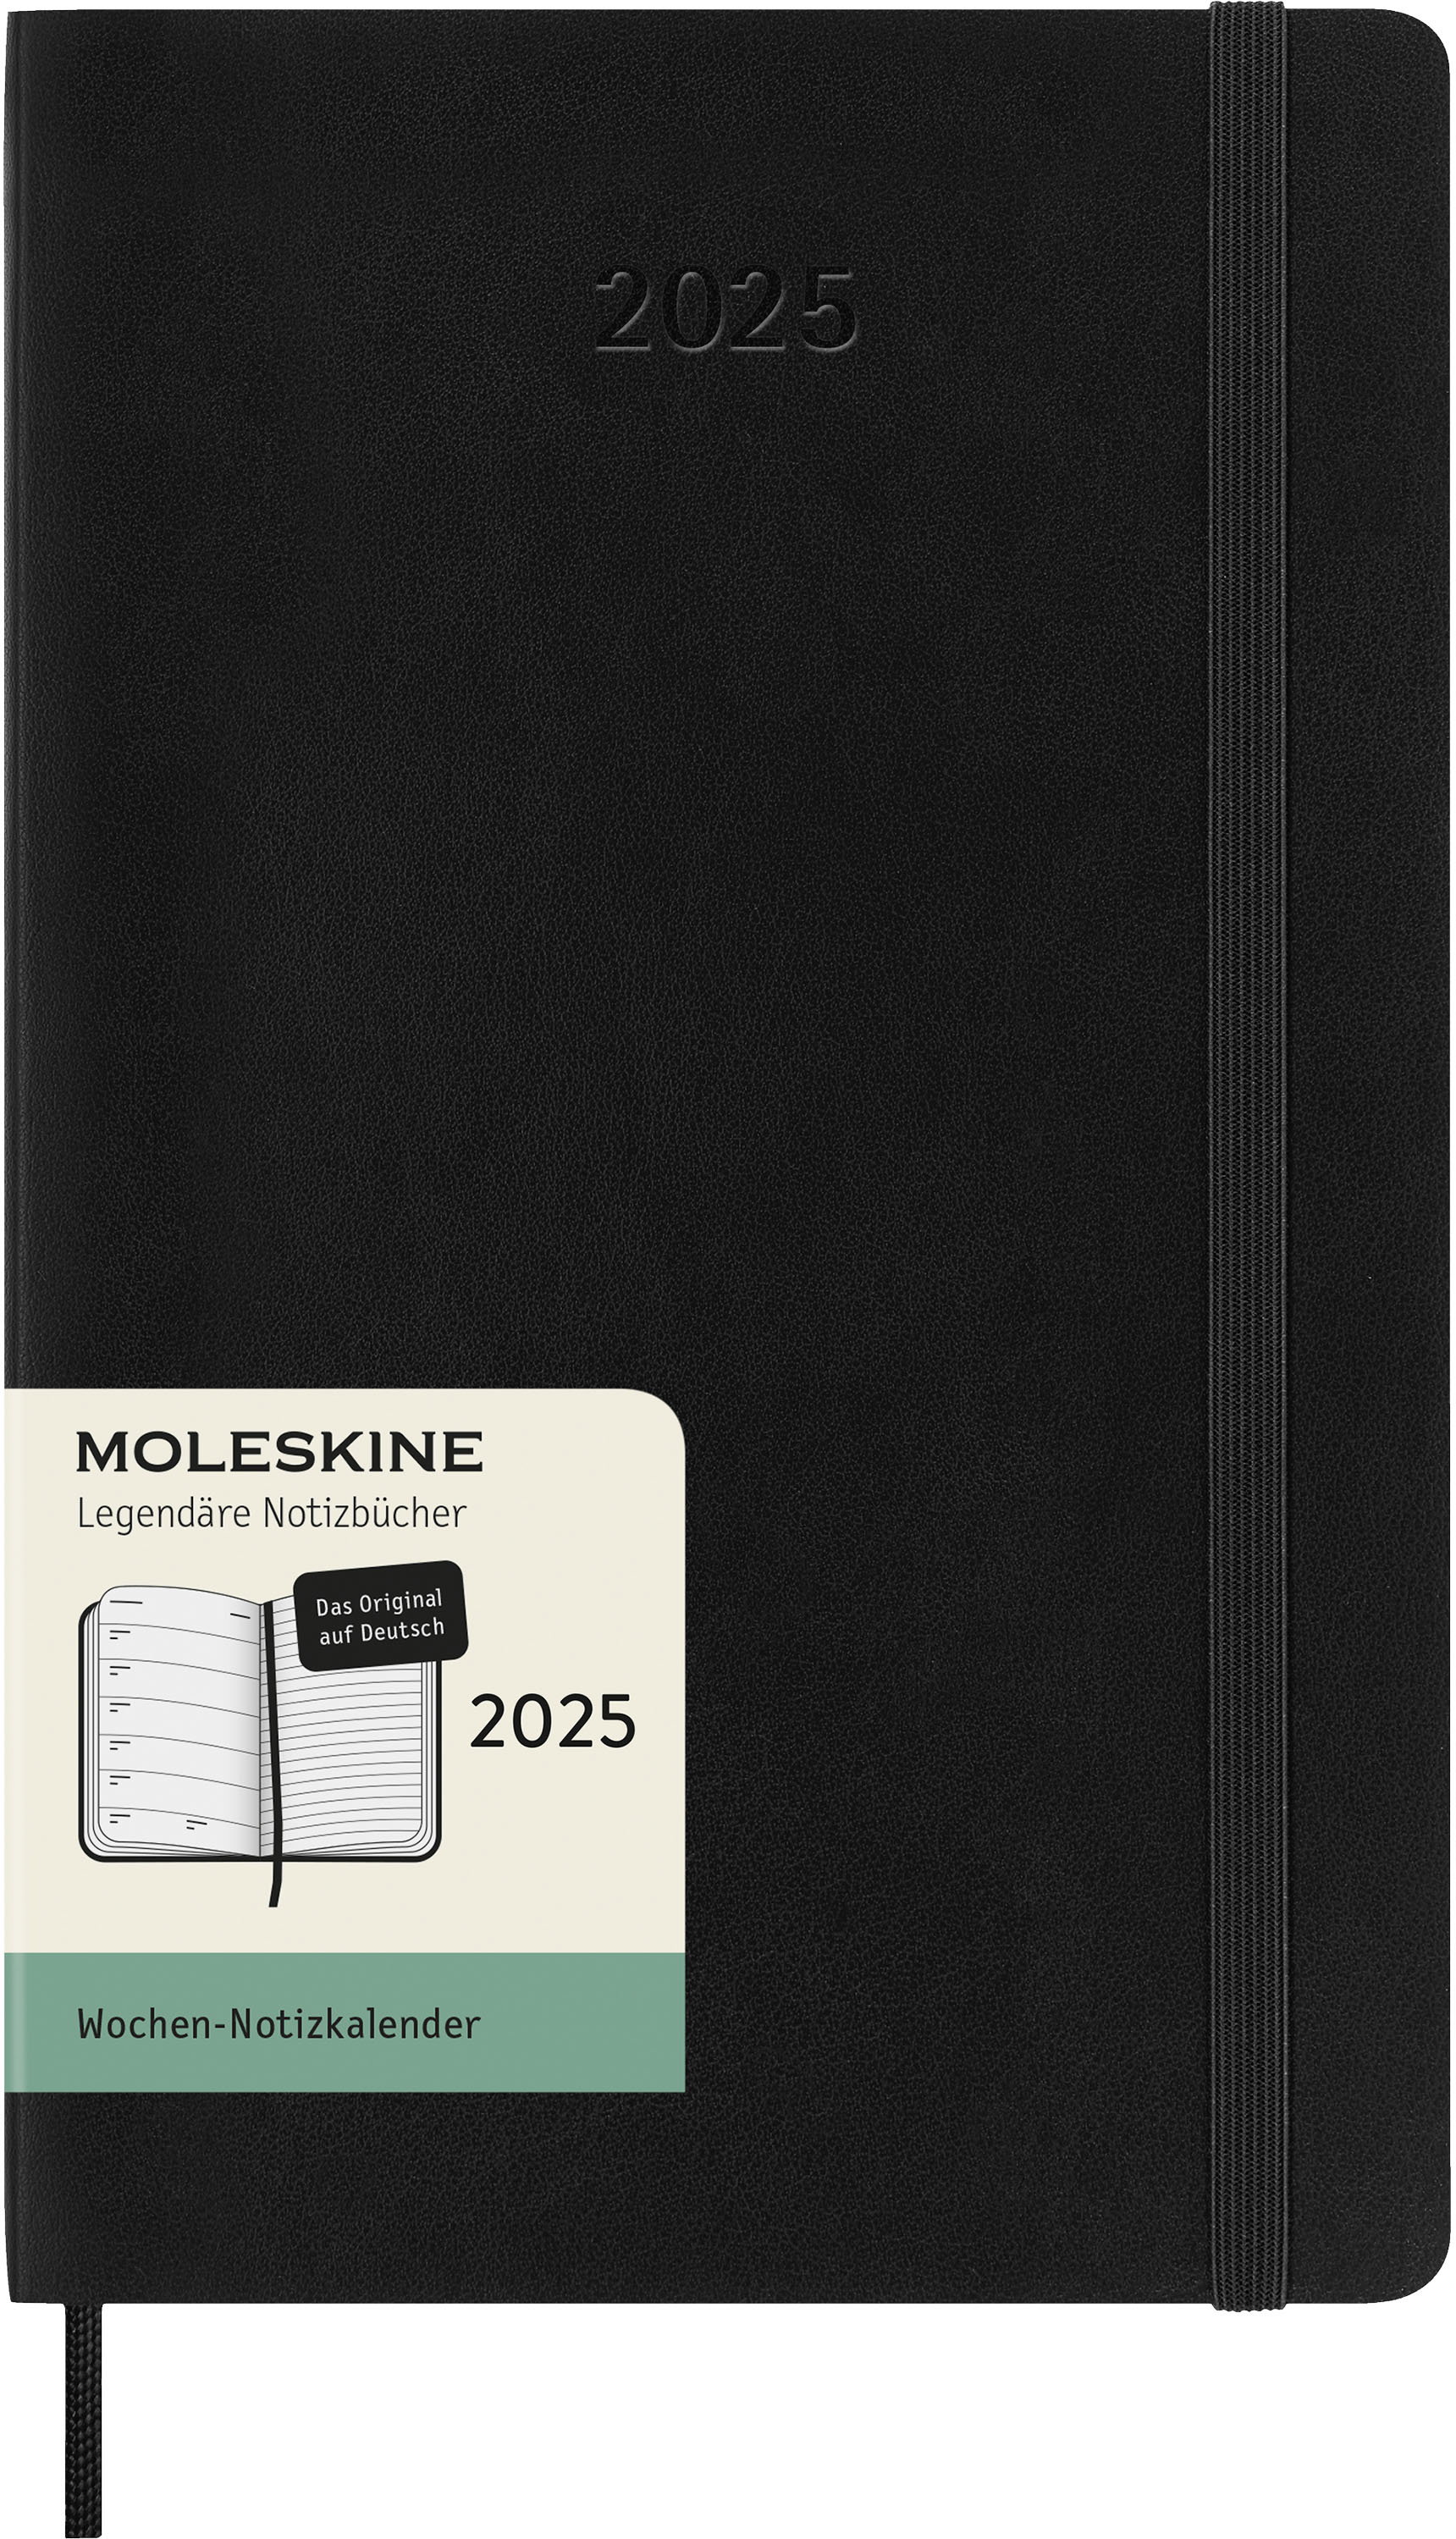 MOLESKINE Agenda Classic Large 2025 056999270308 1S/1P noir SC DE 13x21cm 1S/1P noir SC DE 13x21cm